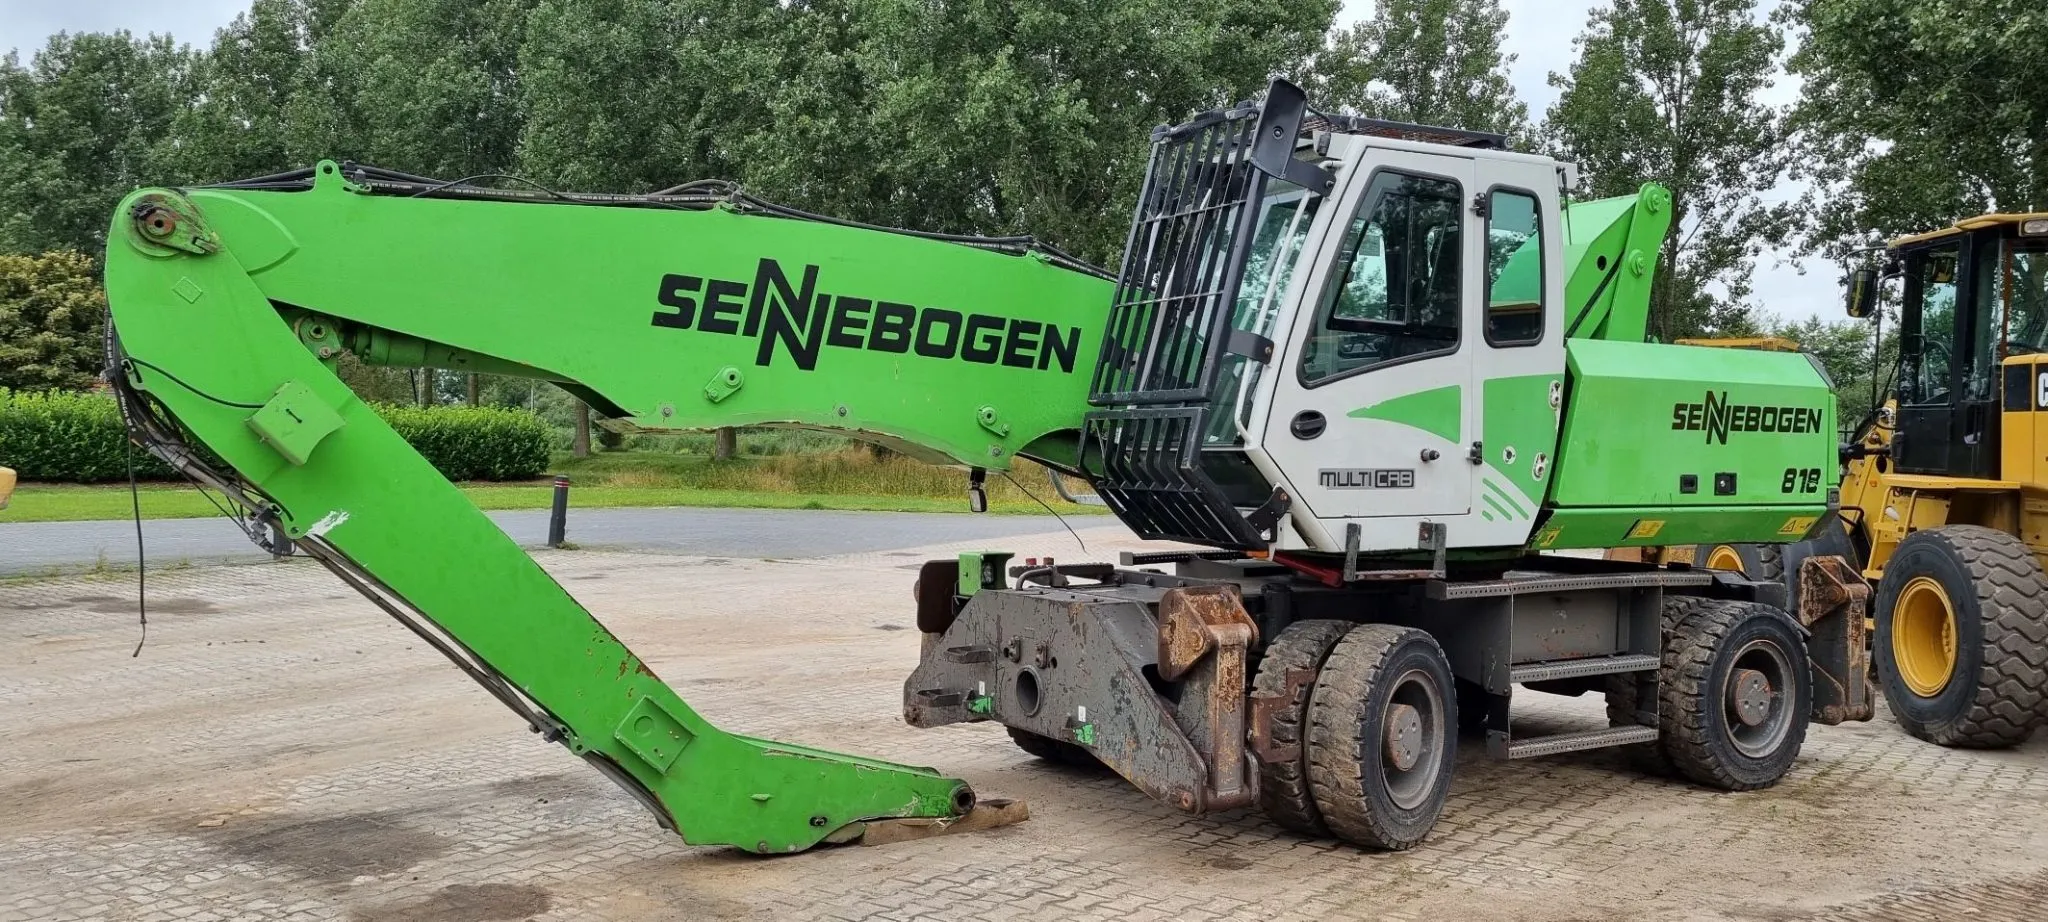 Sold, Sennebogen 818M material handler to Eastern Europe - 6